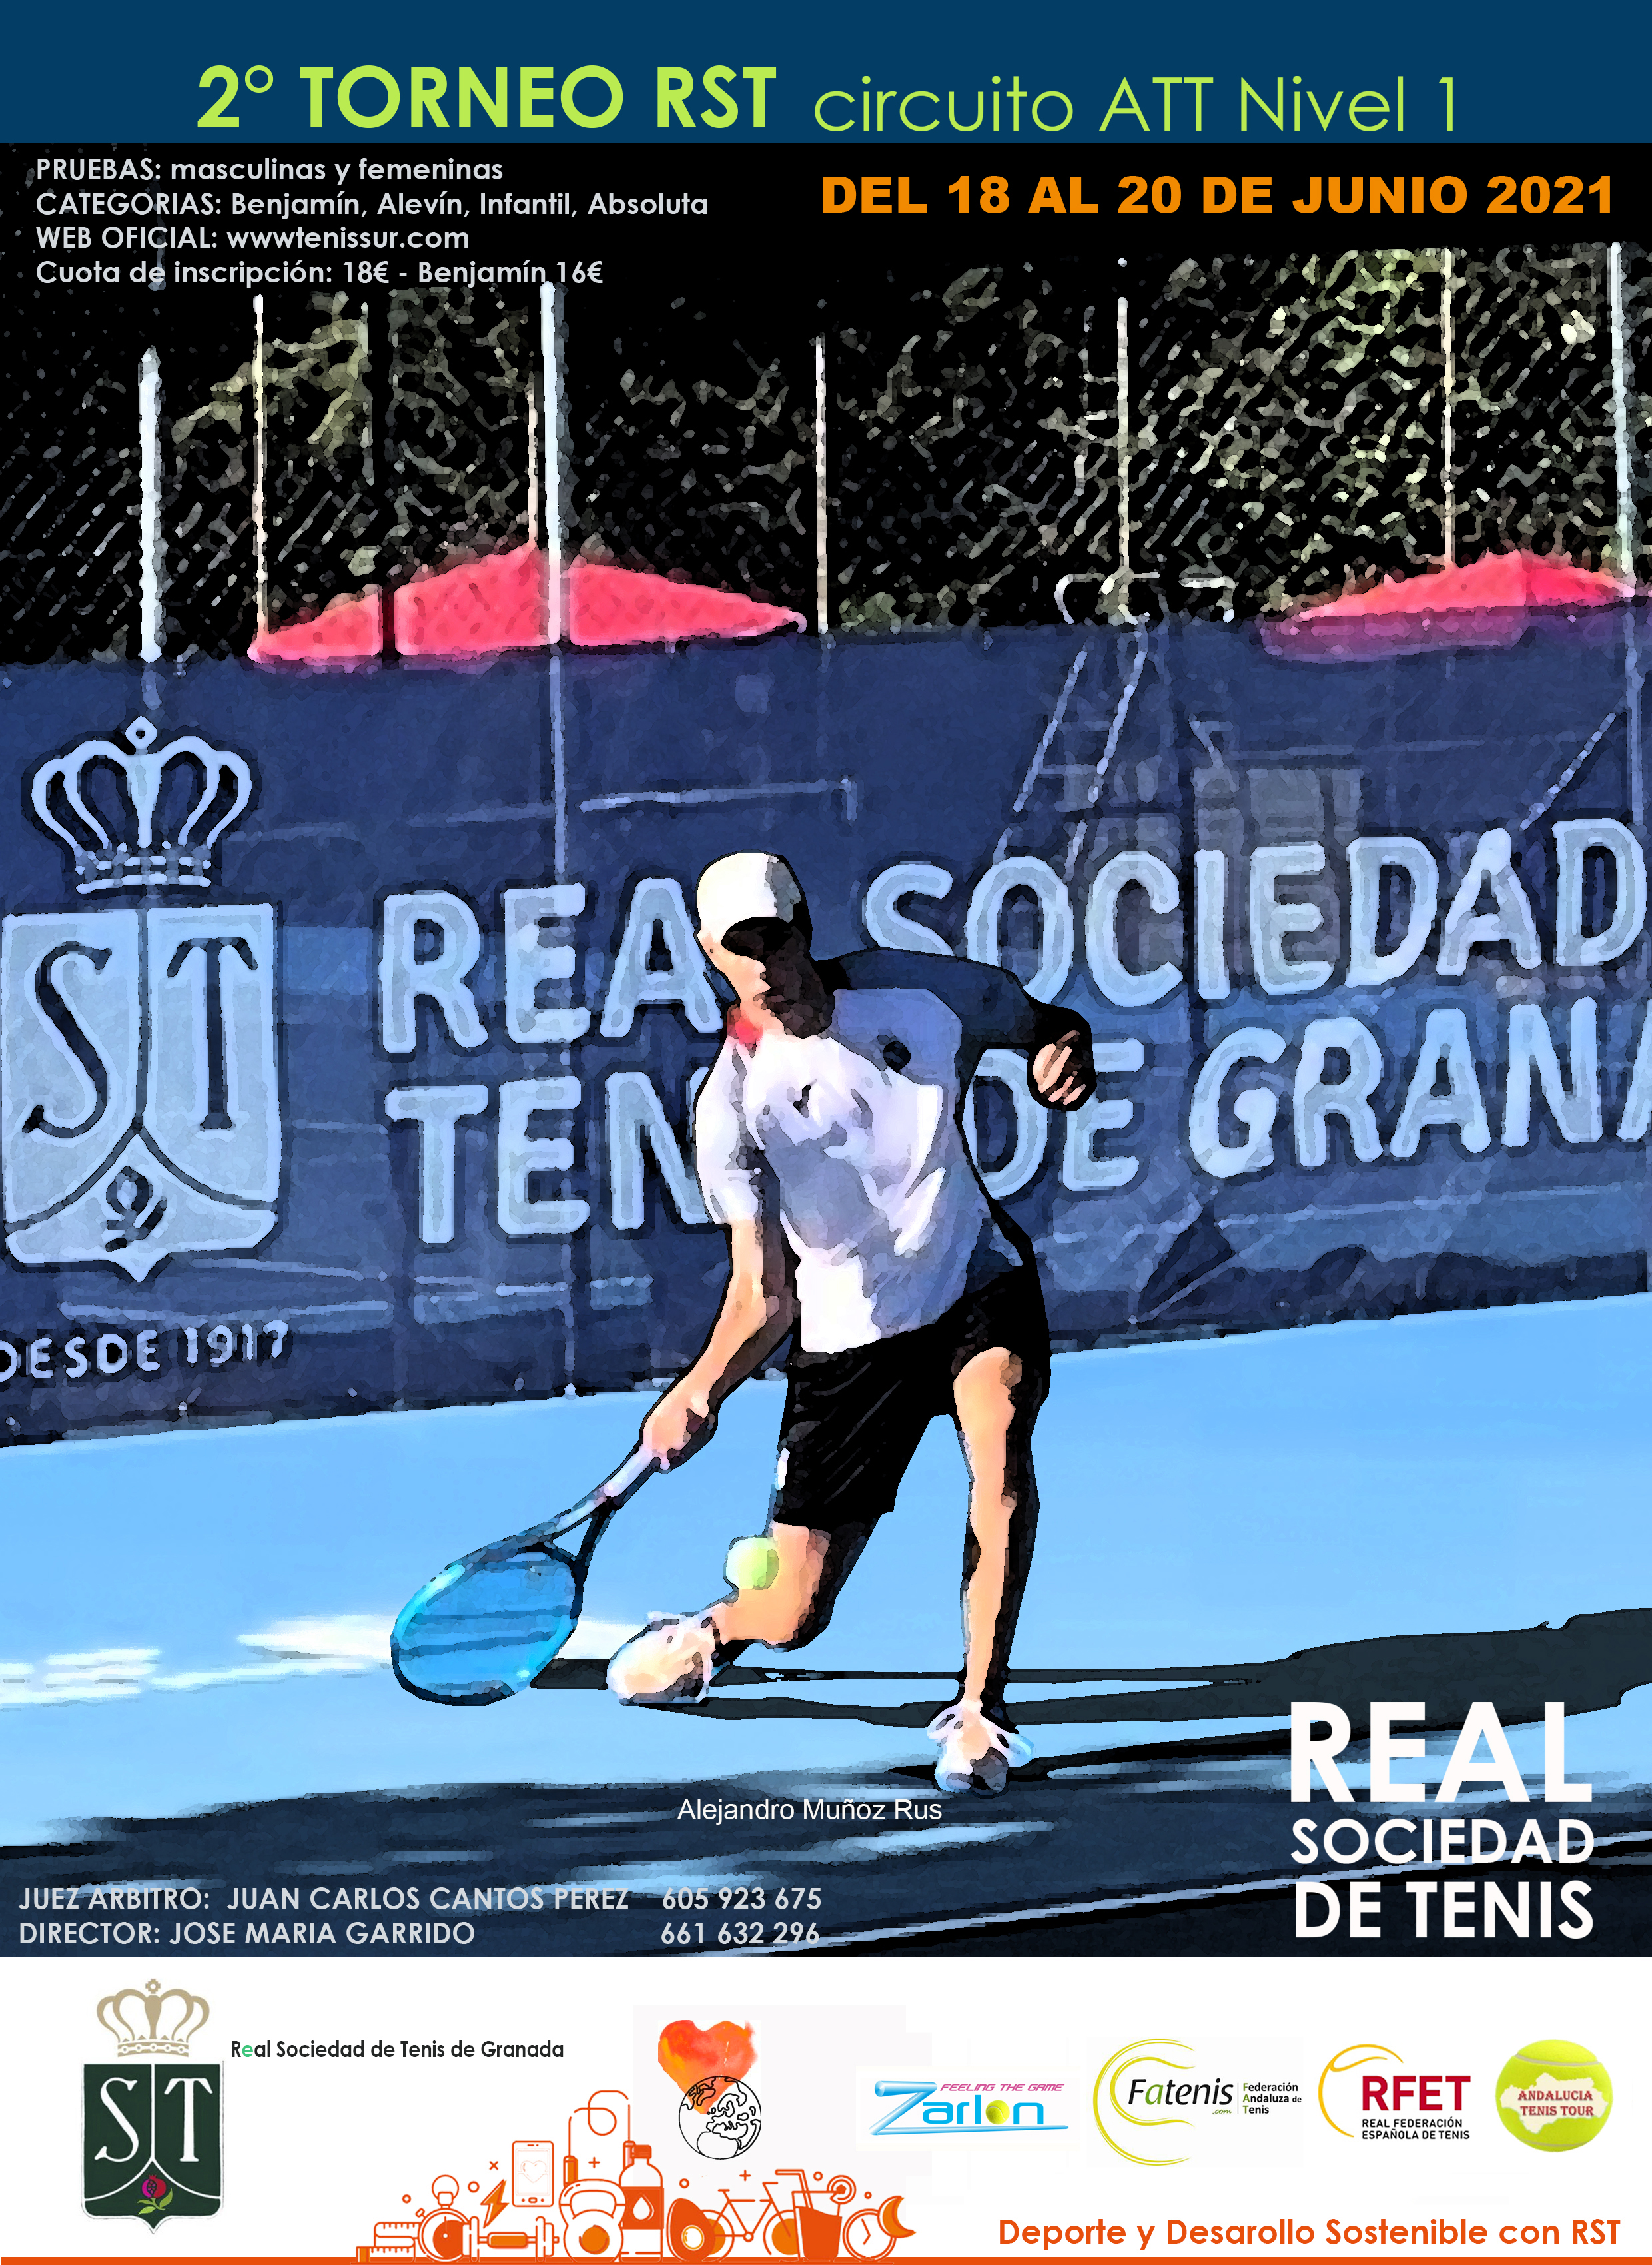 Torneo incluido en el Andalucía Tenis Tour